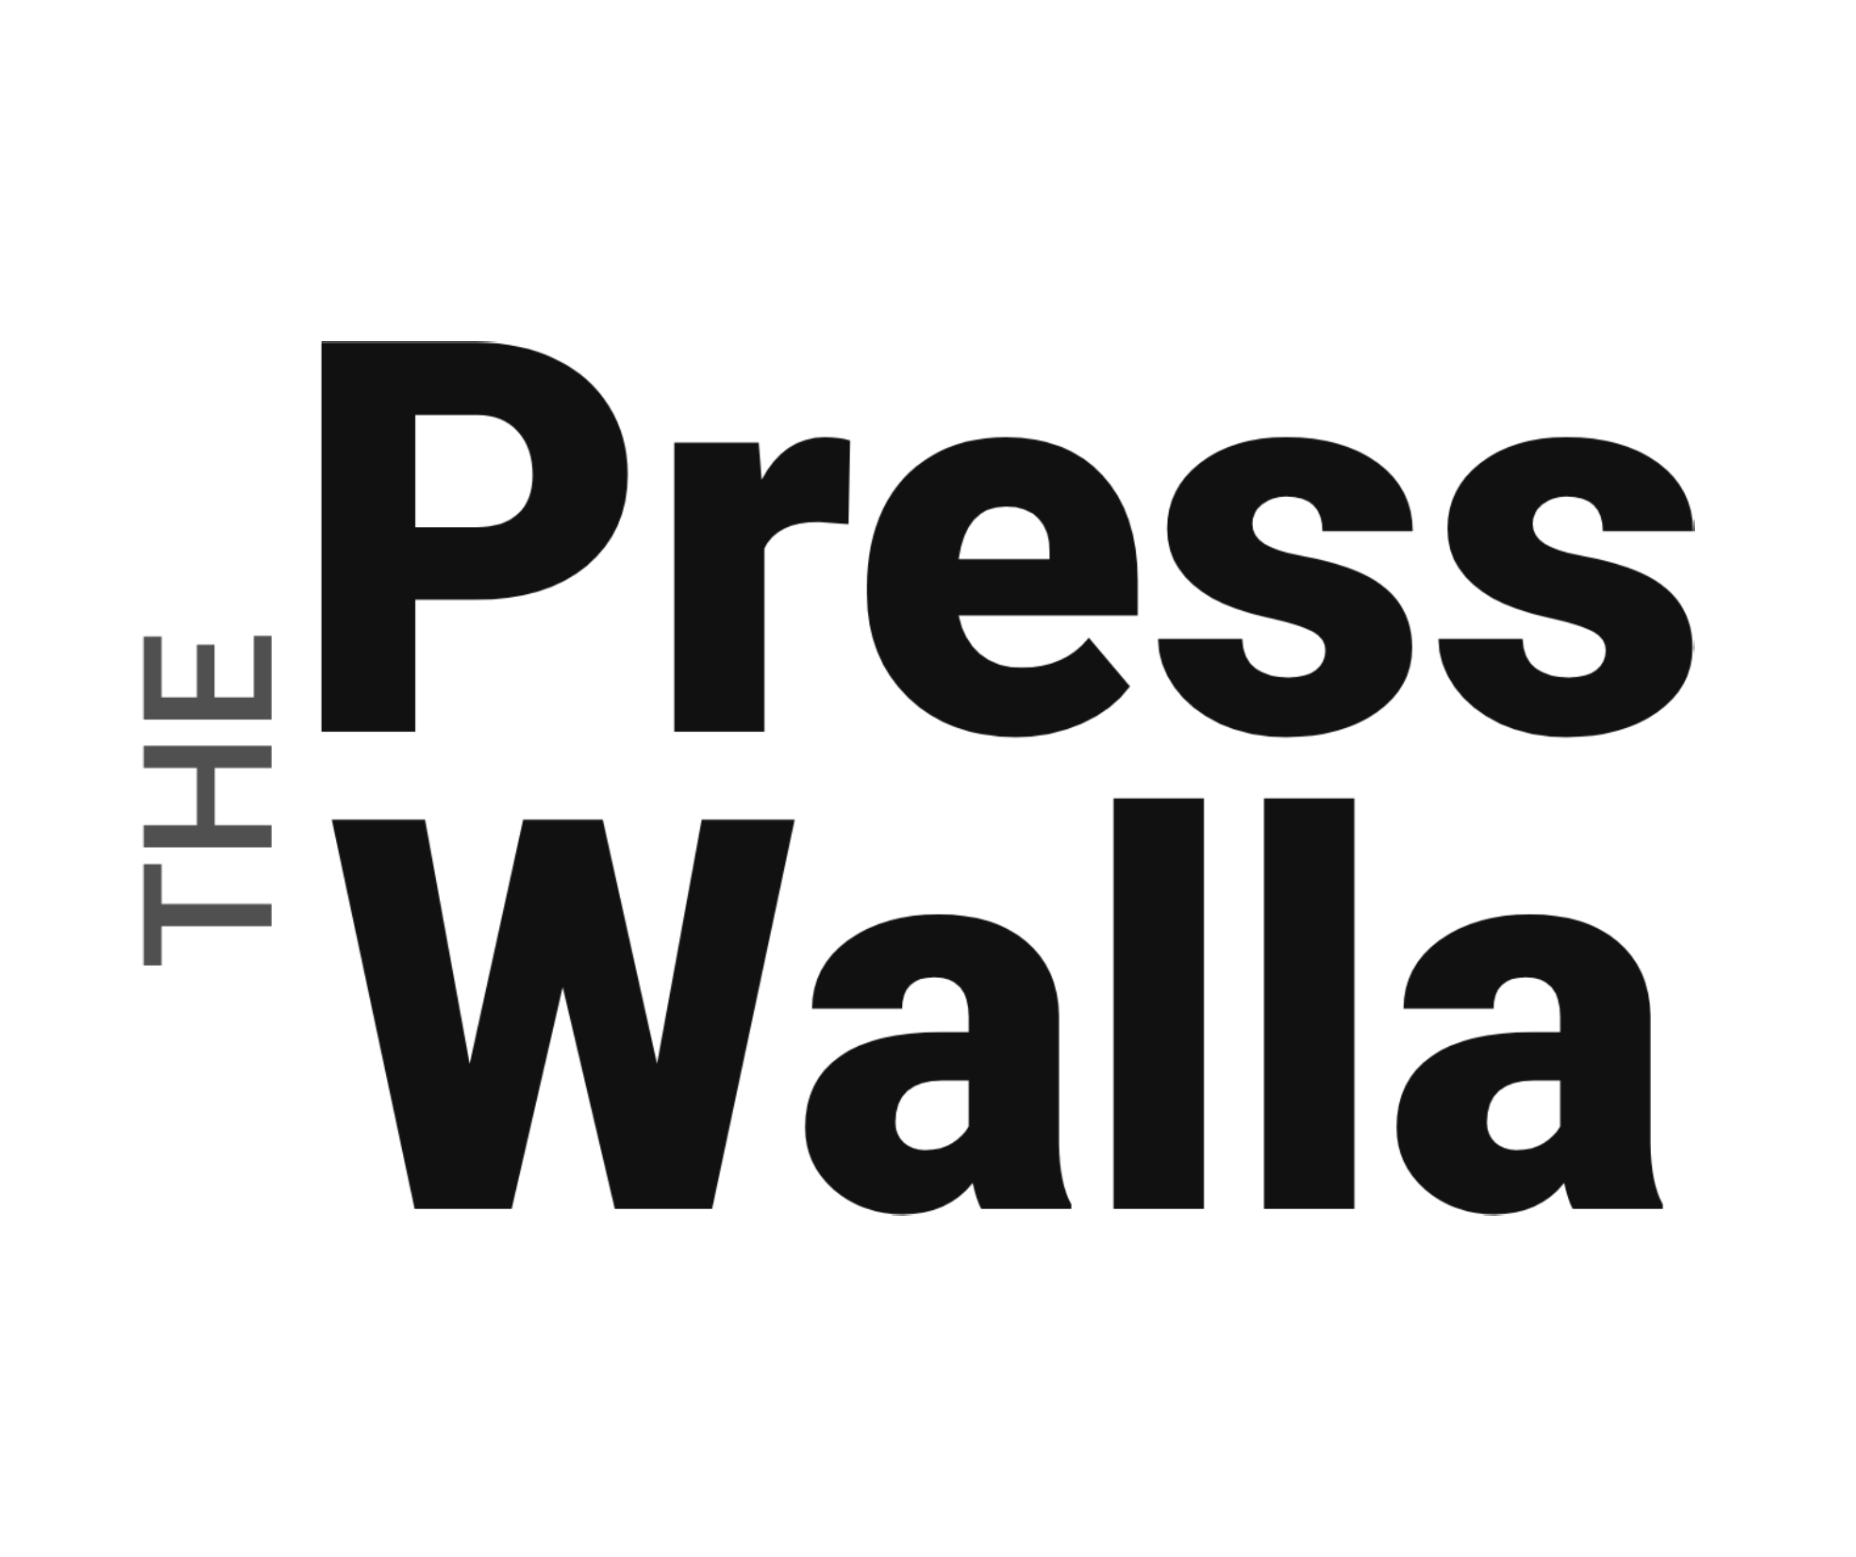 The press walla logo.png